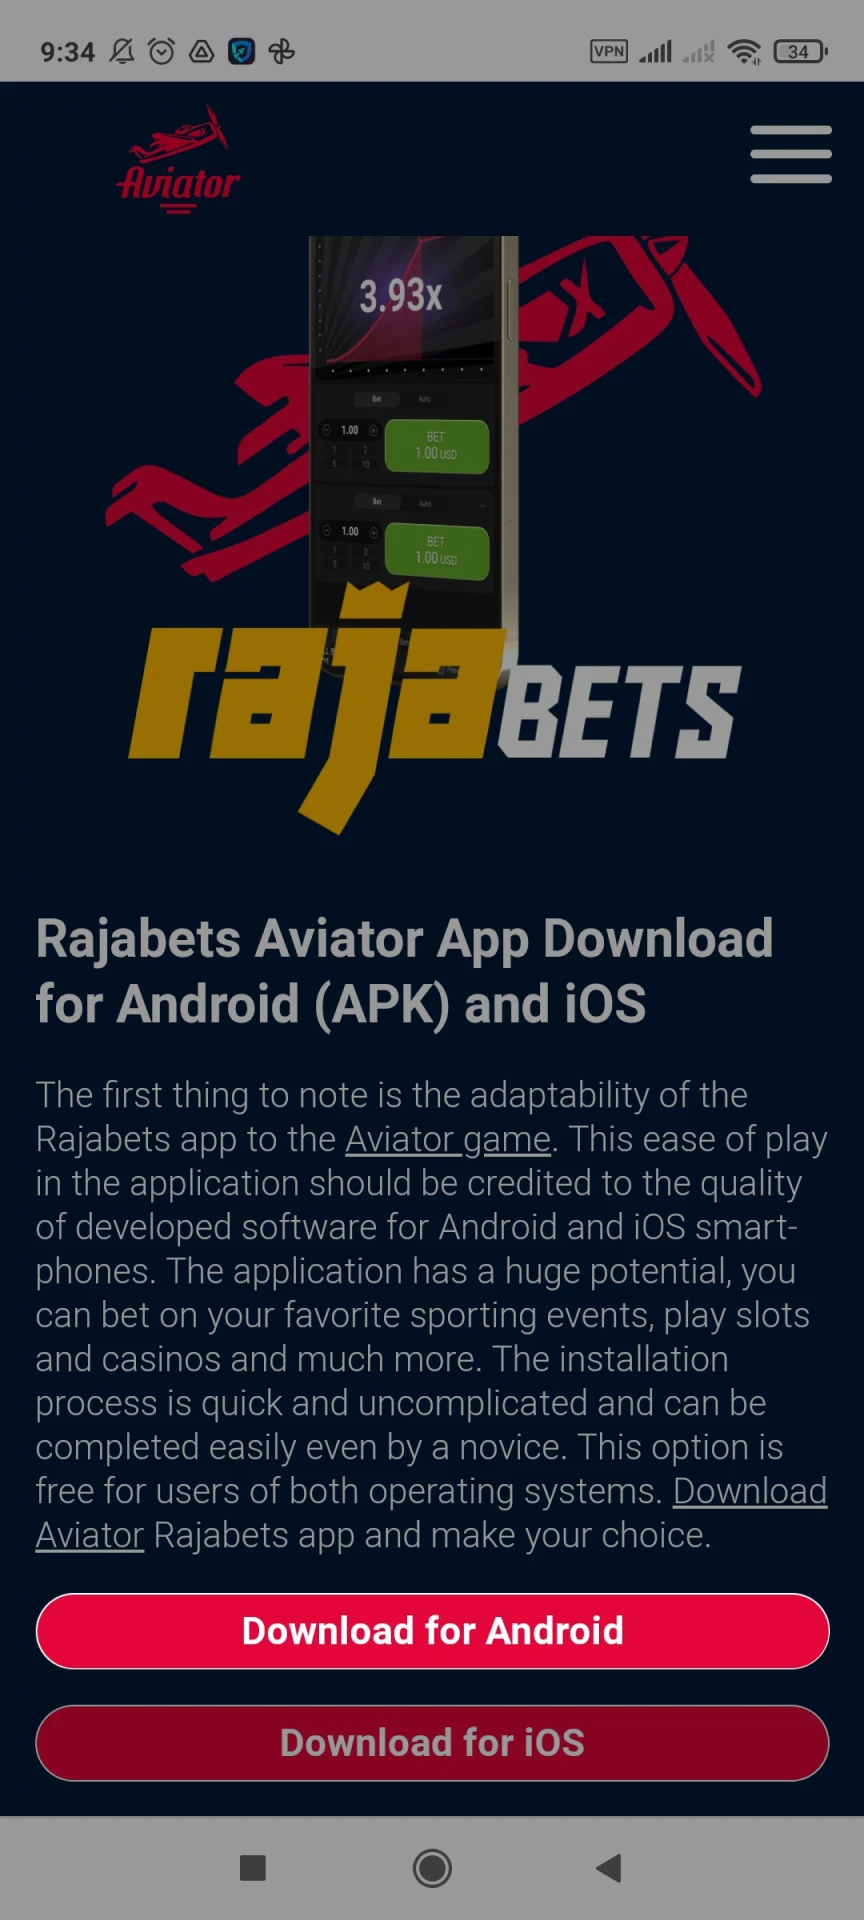 Vá para a página de download do Rajabets para Android.